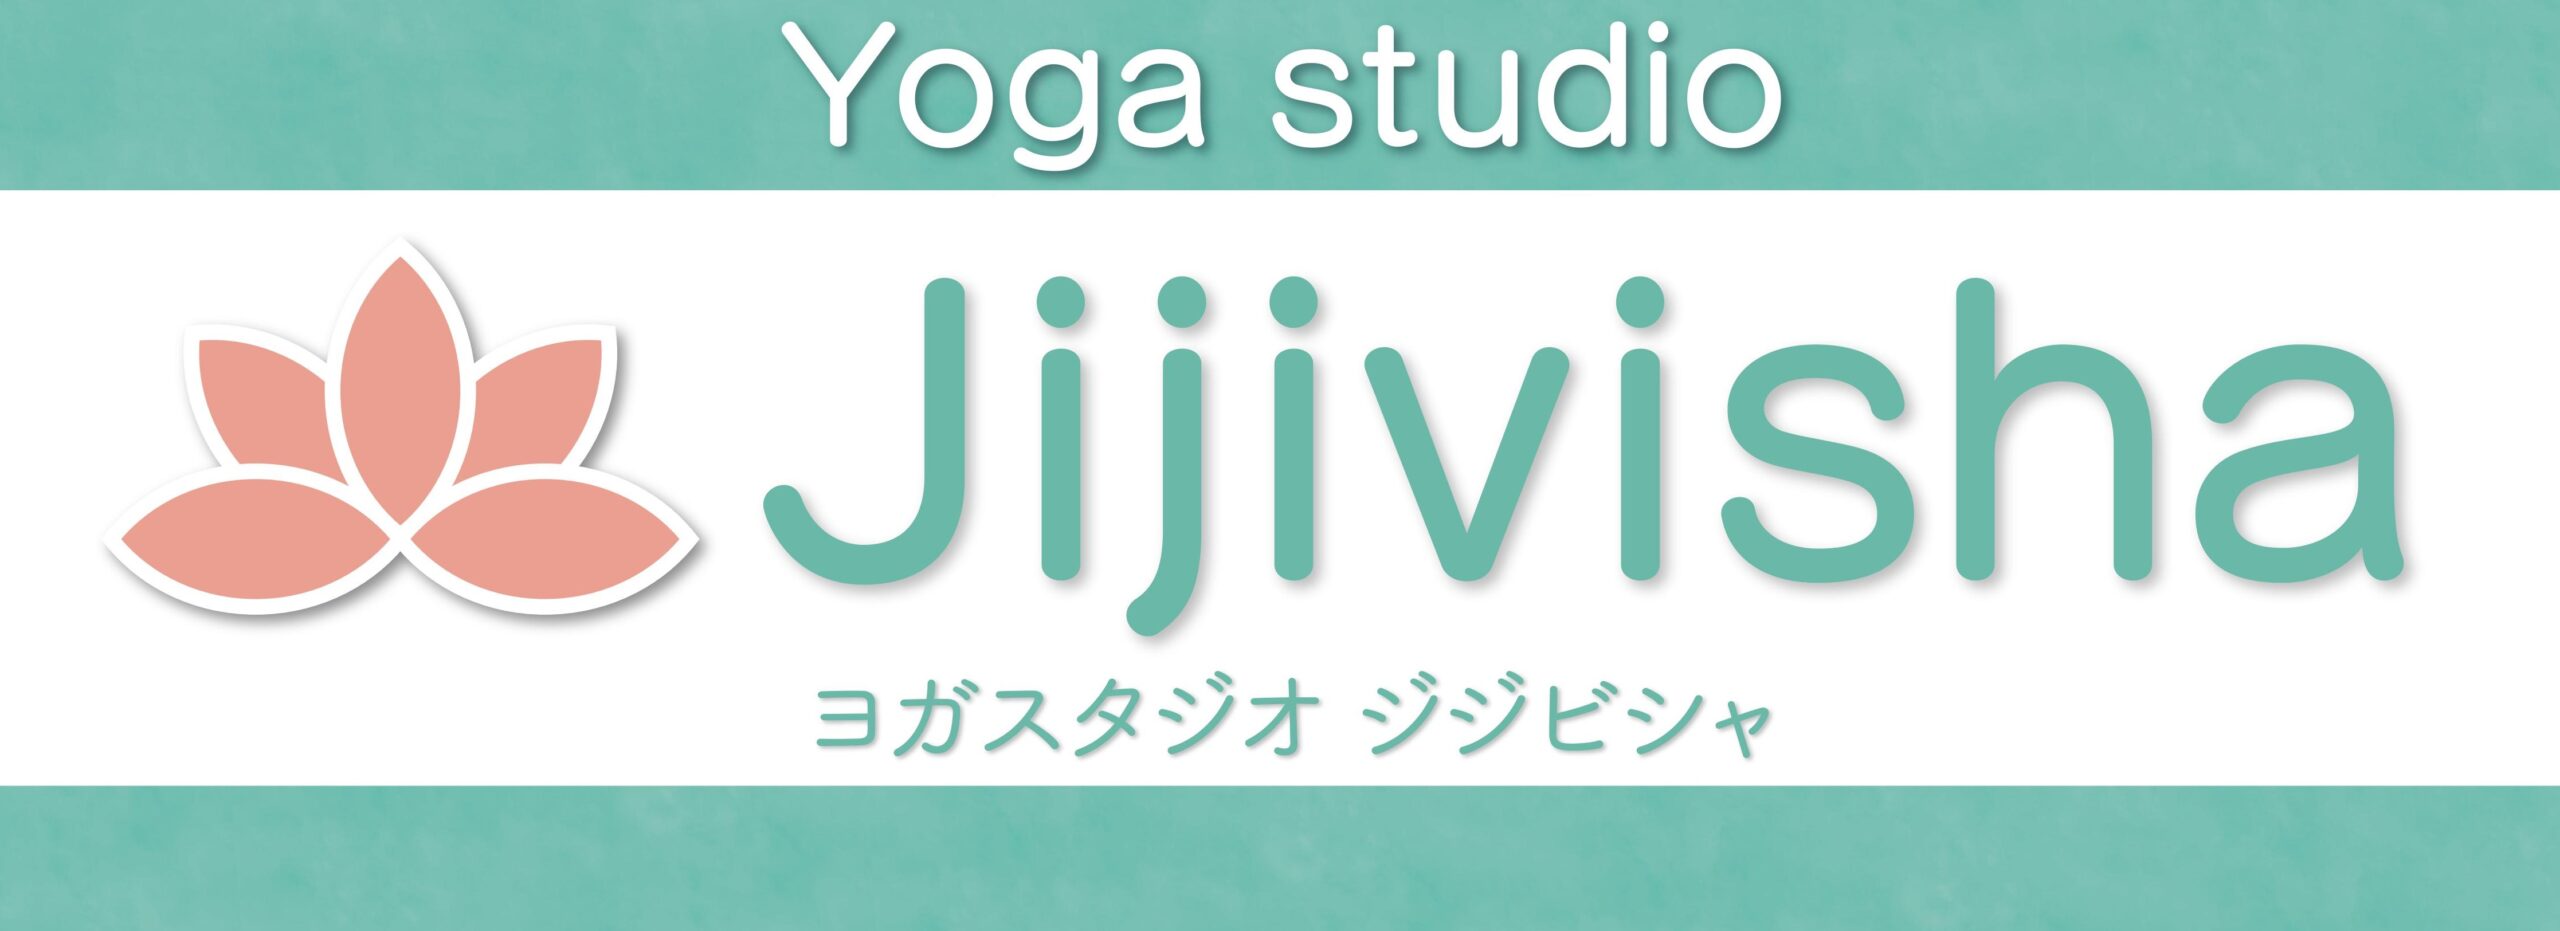 Jijivisha Yoga 